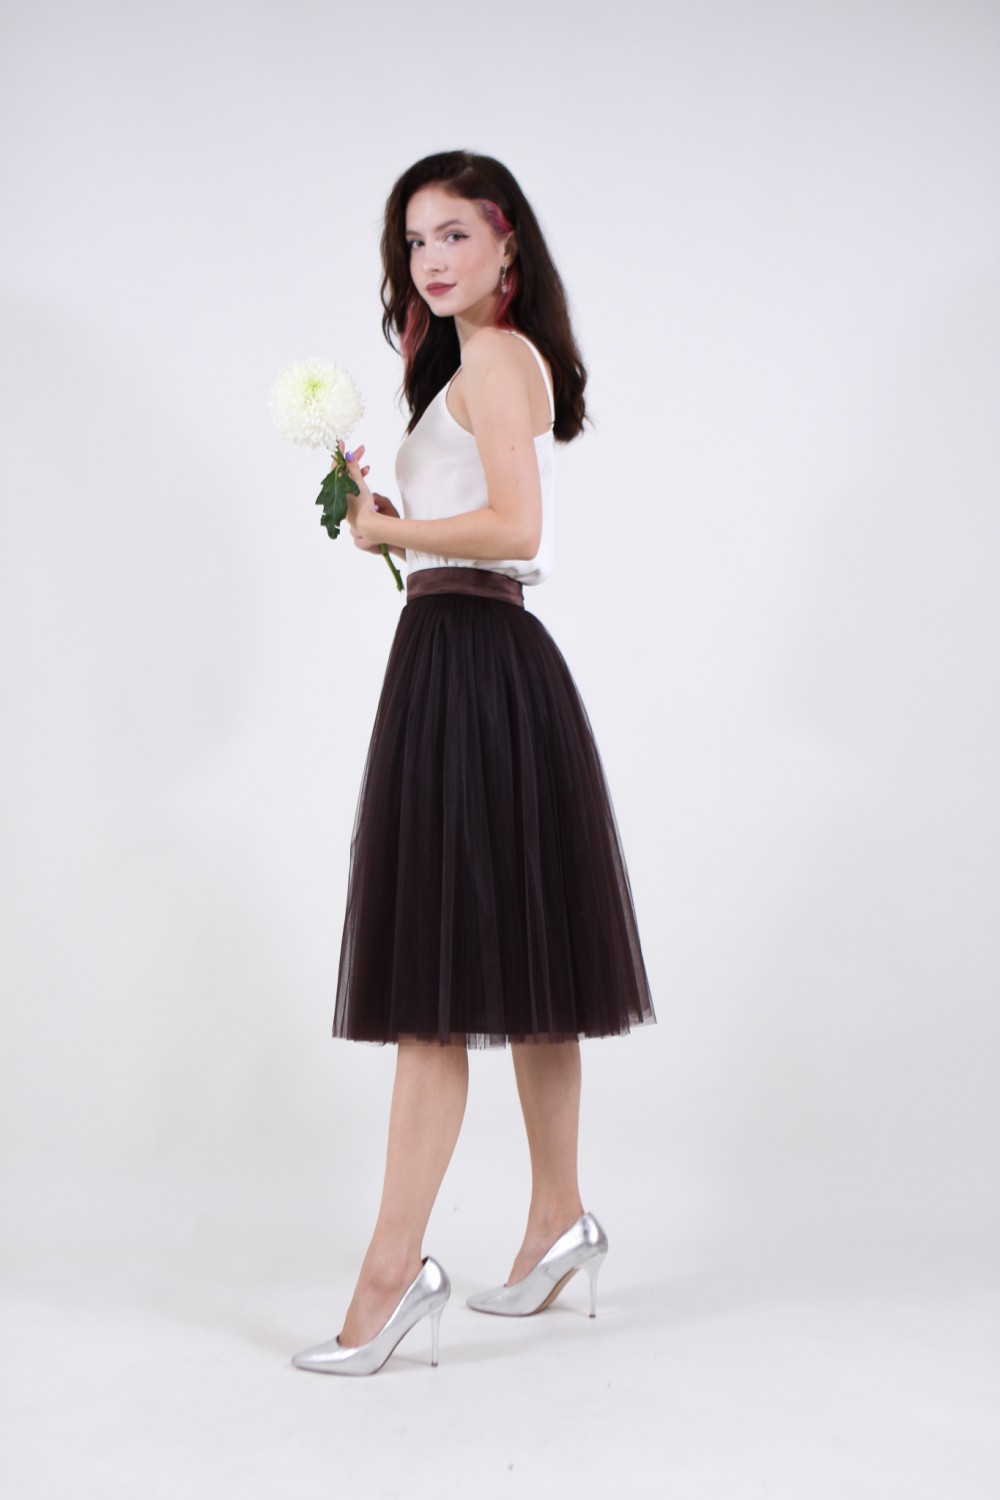 Пышная юбка из фатина (60 цветов) Горький шоколад - фото